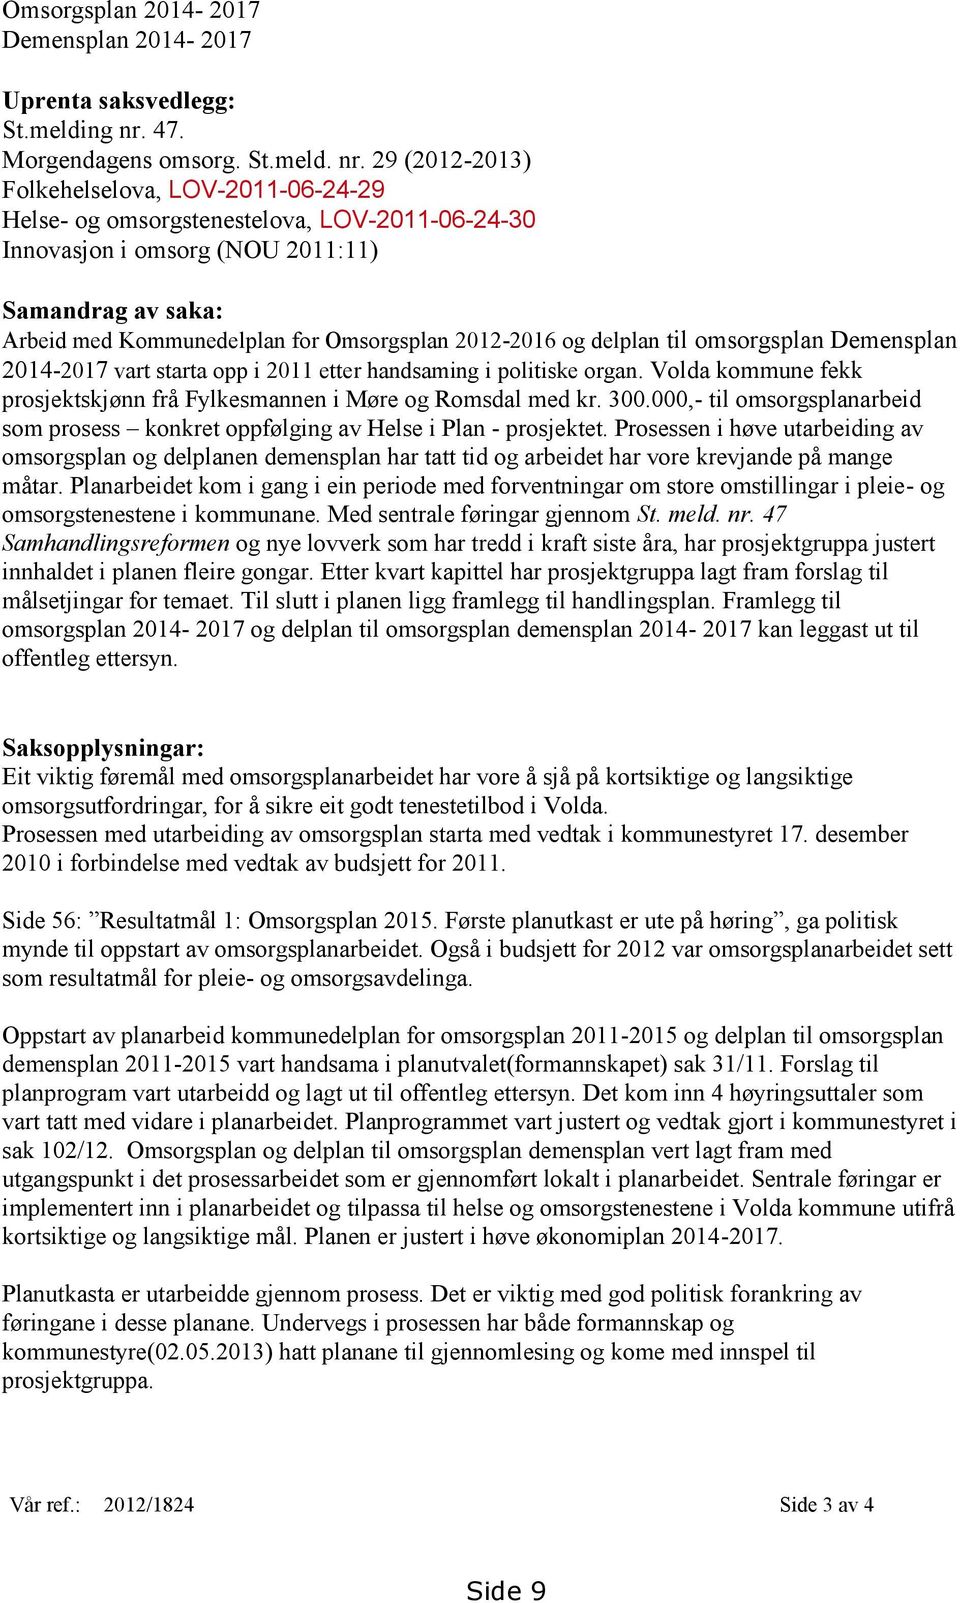 29 (2012-2013) Folkehelselova, LOV-2011-06-24-29 Helse- og omsorgstenestelova, LOV-2011-06-24-30 Innovasjon i omsorg (NOU 2011:11) Samandrag av saka: Arbeid med Kommunedelplan for Omsorgsplan